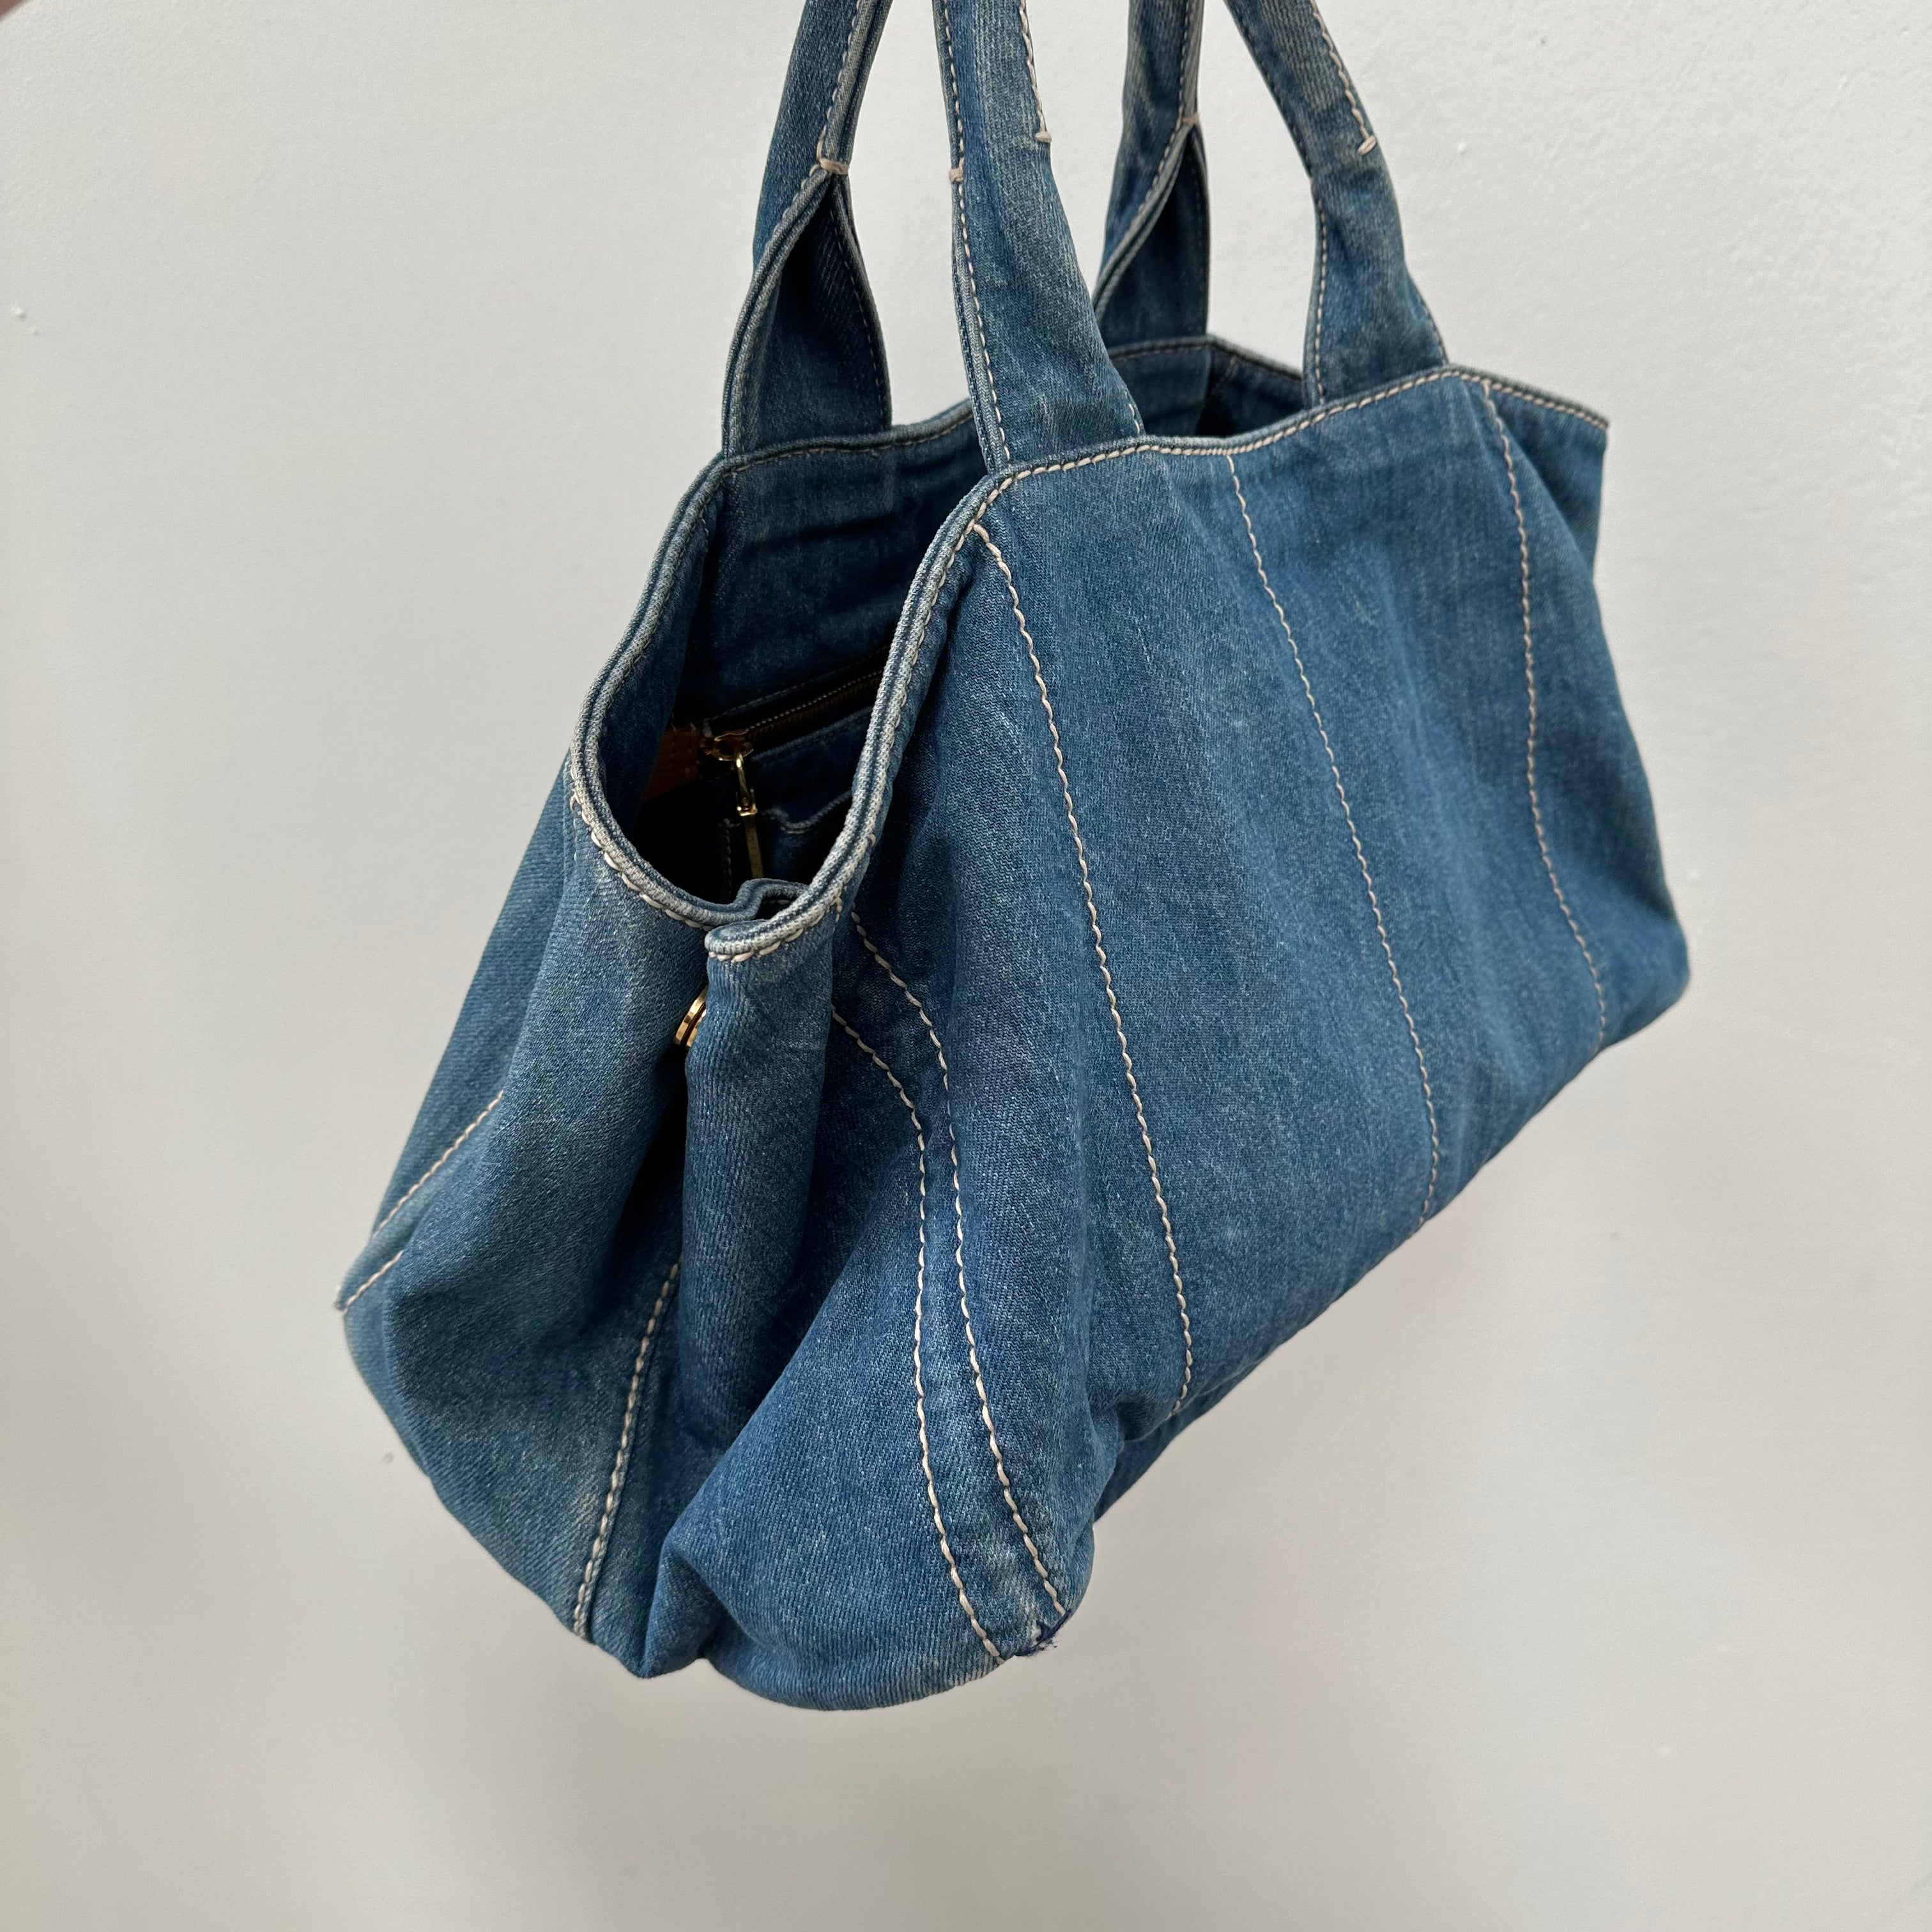 Prada Canapa GM Hand Bag Denim Blue